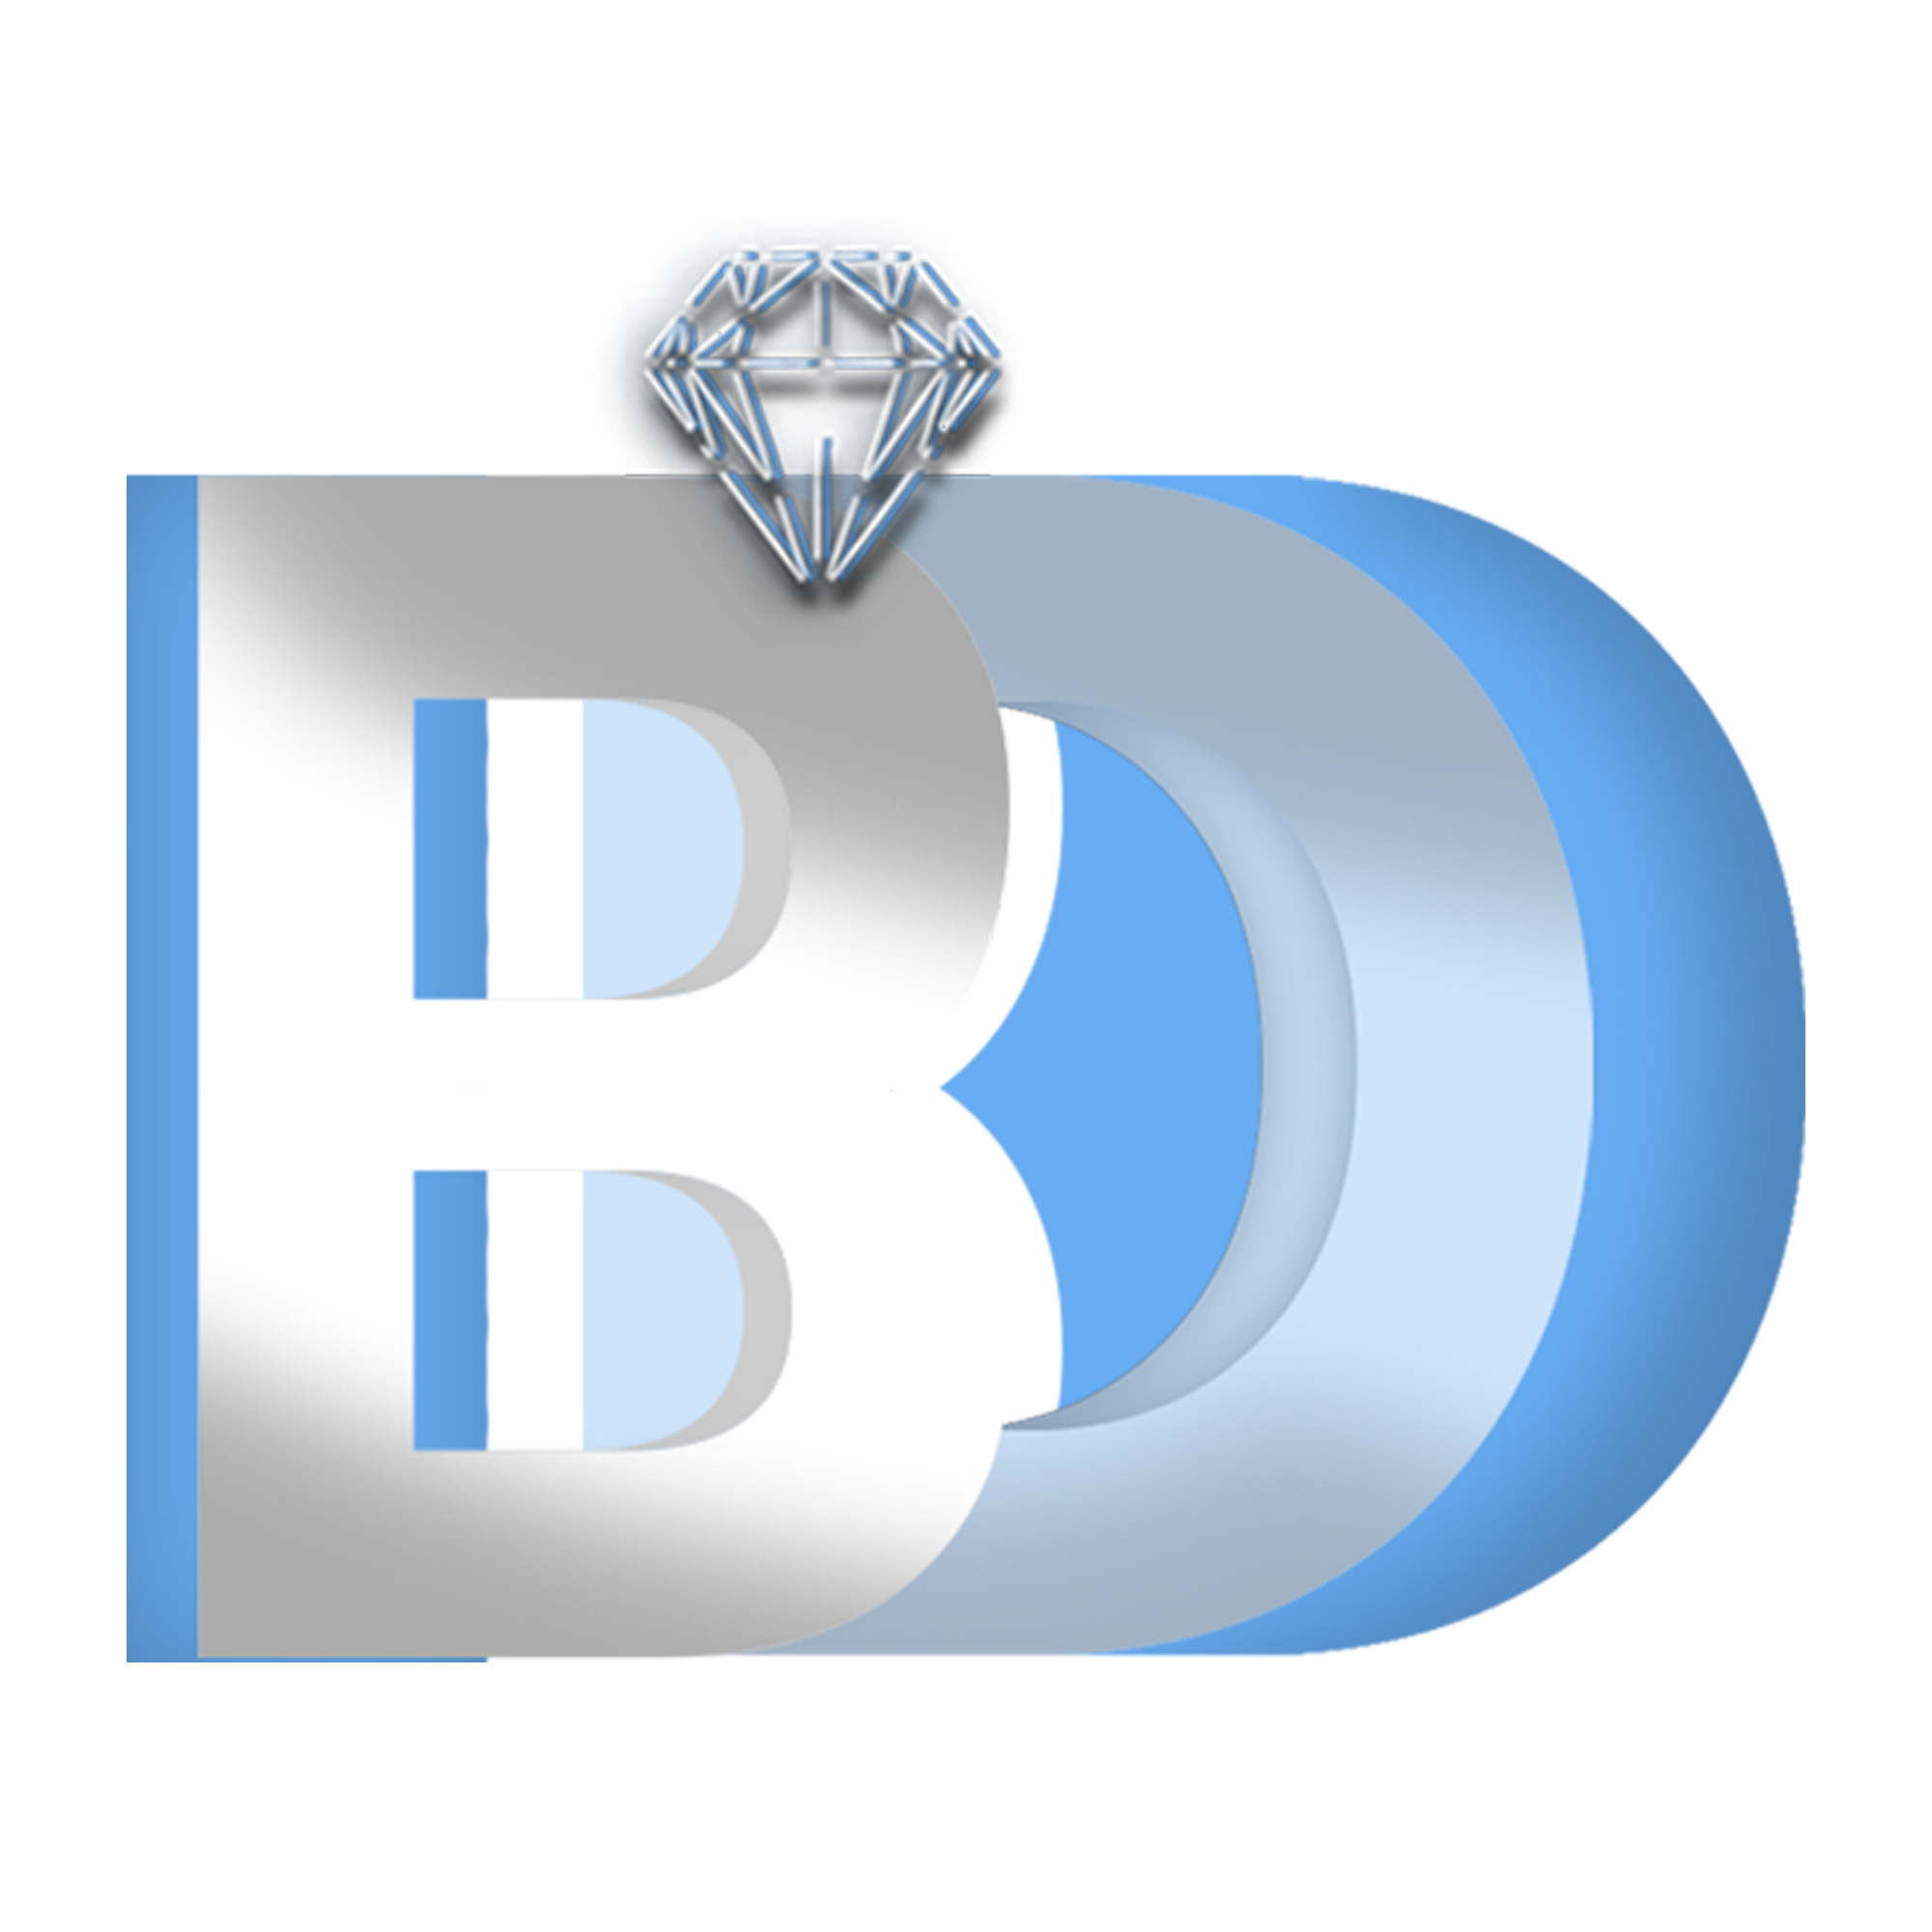 Blue Diamond Project Management Services